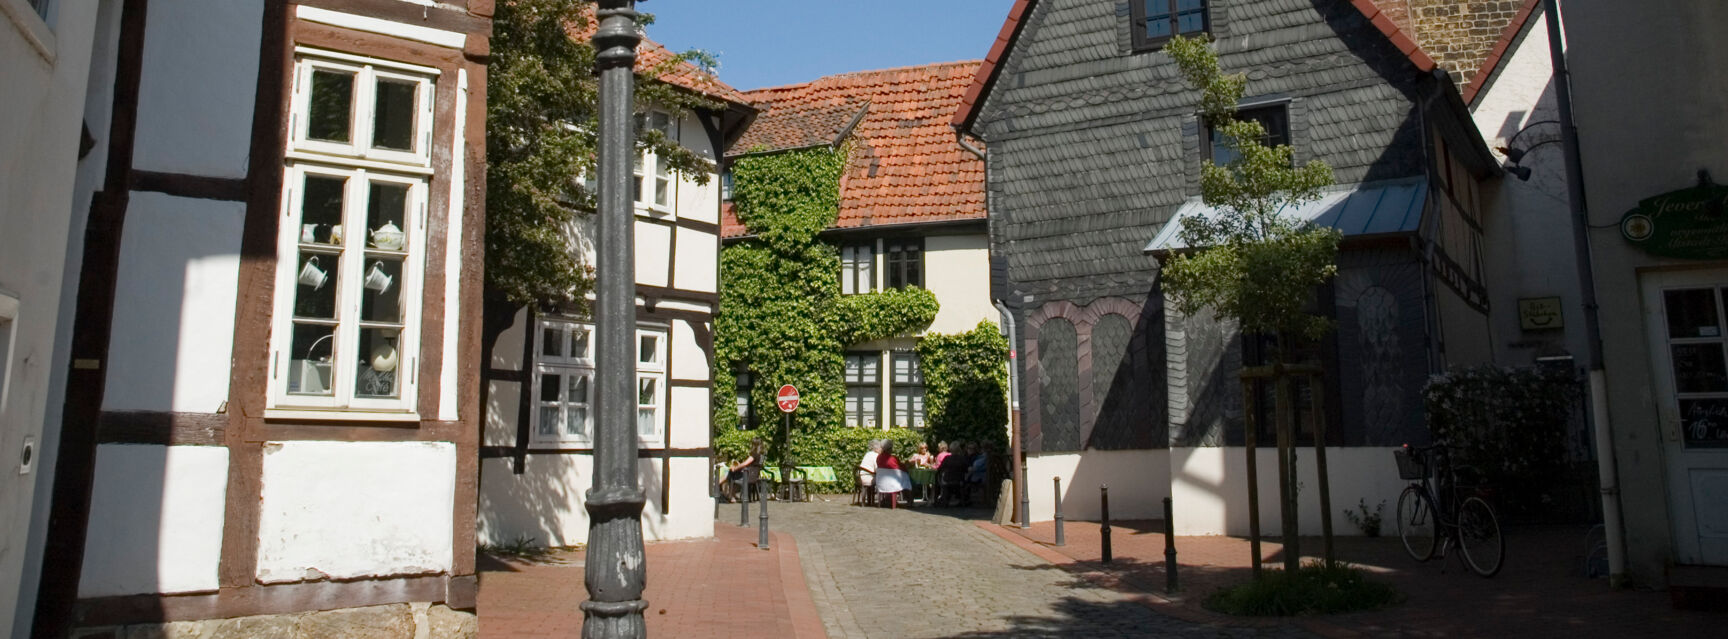 Altstadt Minden